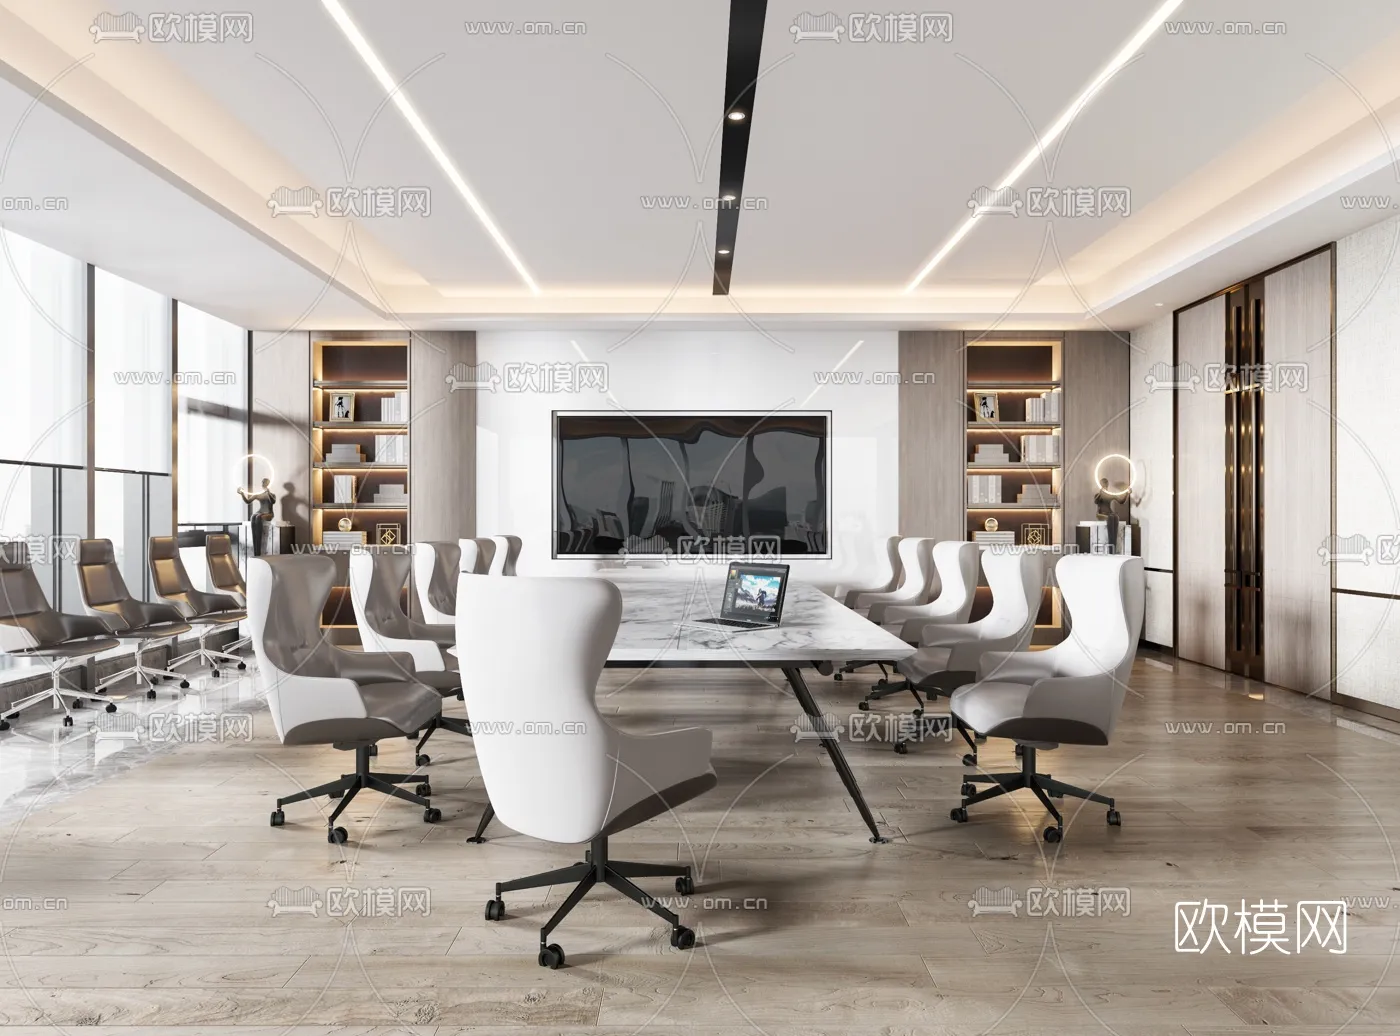 Meeting Room 3D Scenes – 1461